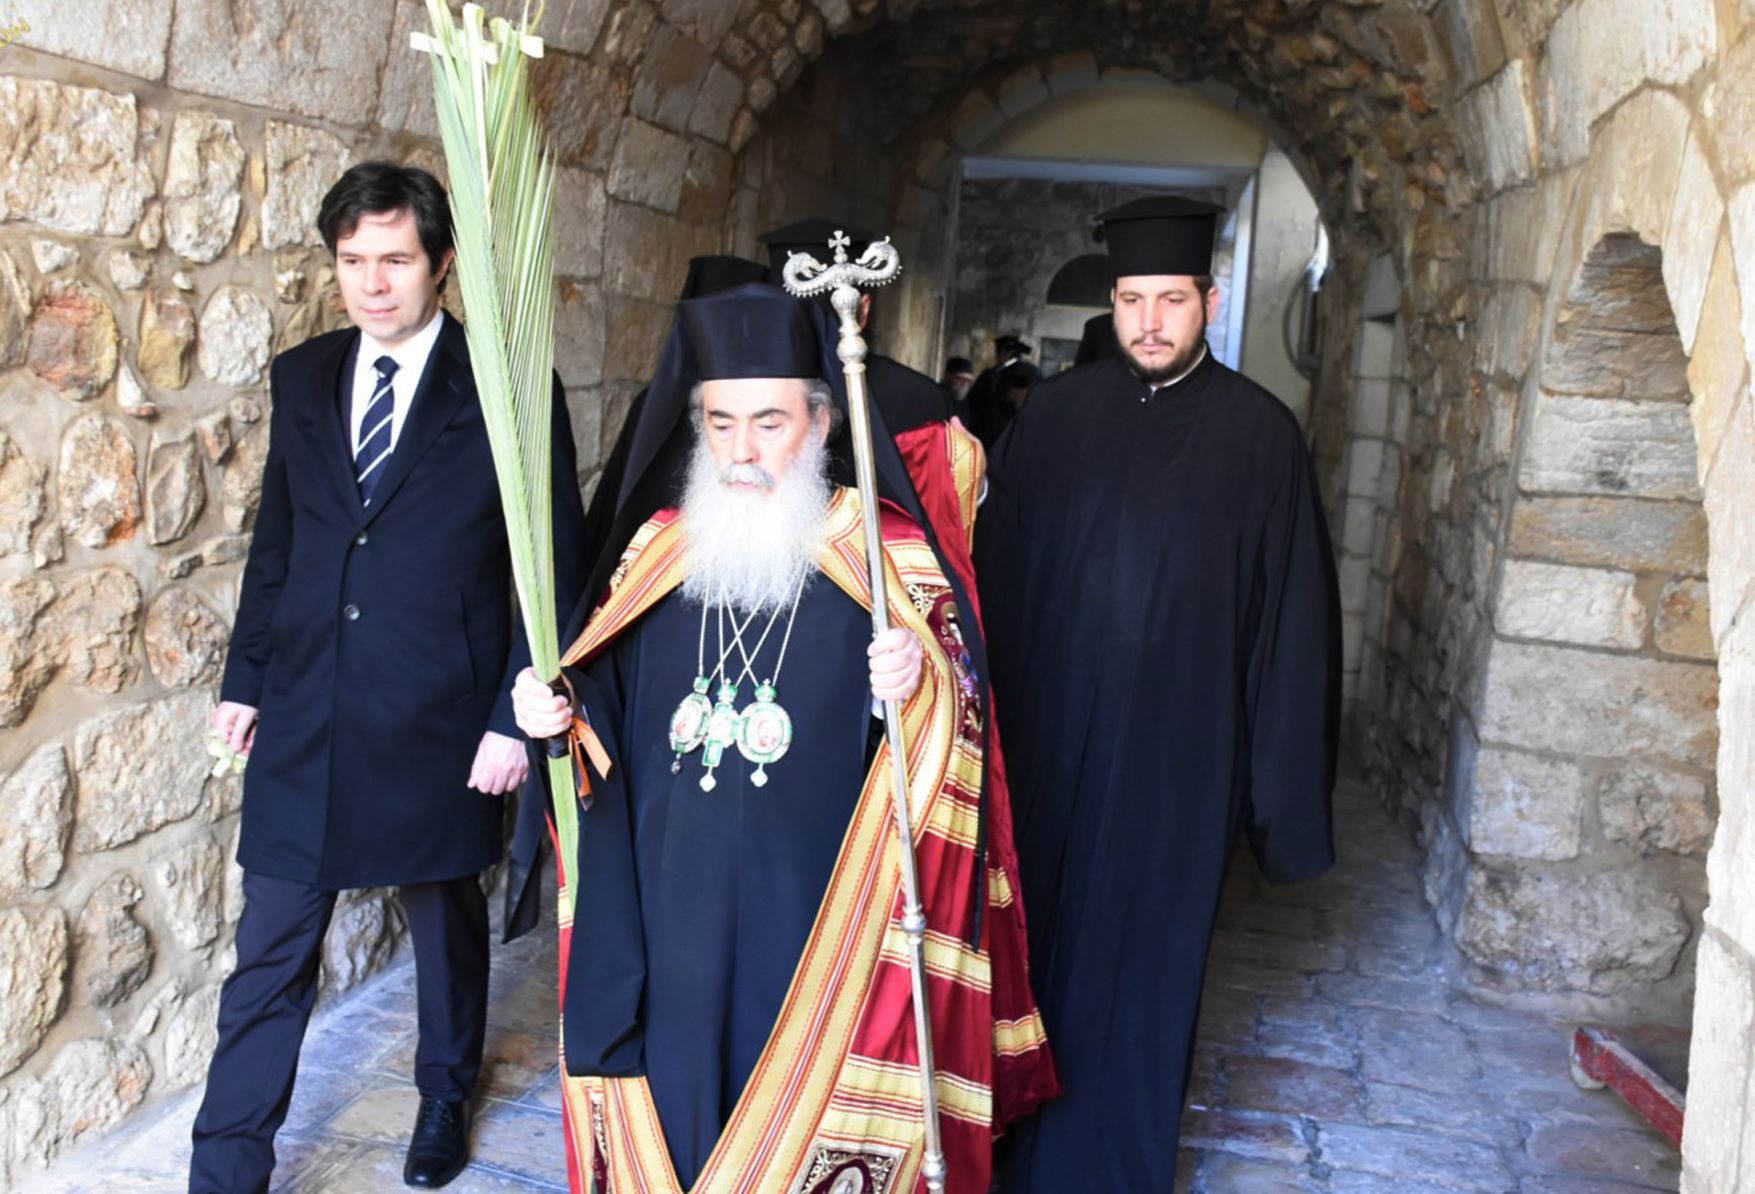 Ανησυχία για τις κινήσεις κατά της περιουσίας του Ελληνορθόδοξου Πατριαρχείου Ιεροσολύμων